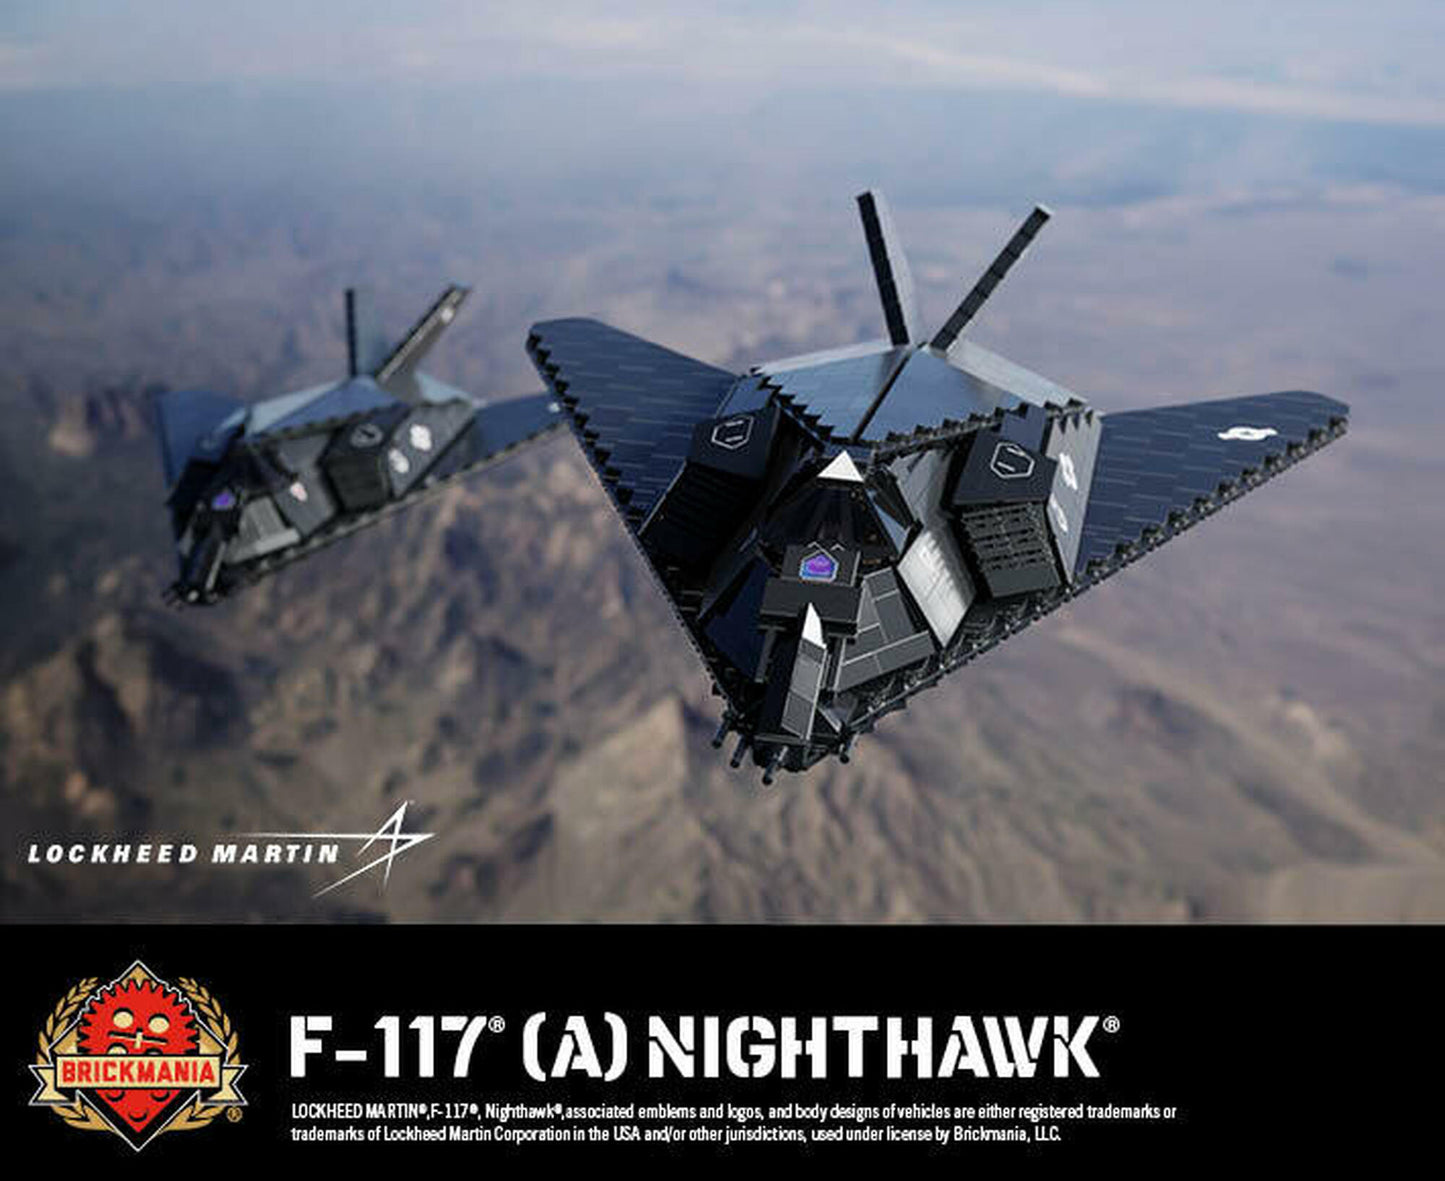 F-117® (A) Nighthawk® - Stealth Attack Aircraft - MOMCOM inc.